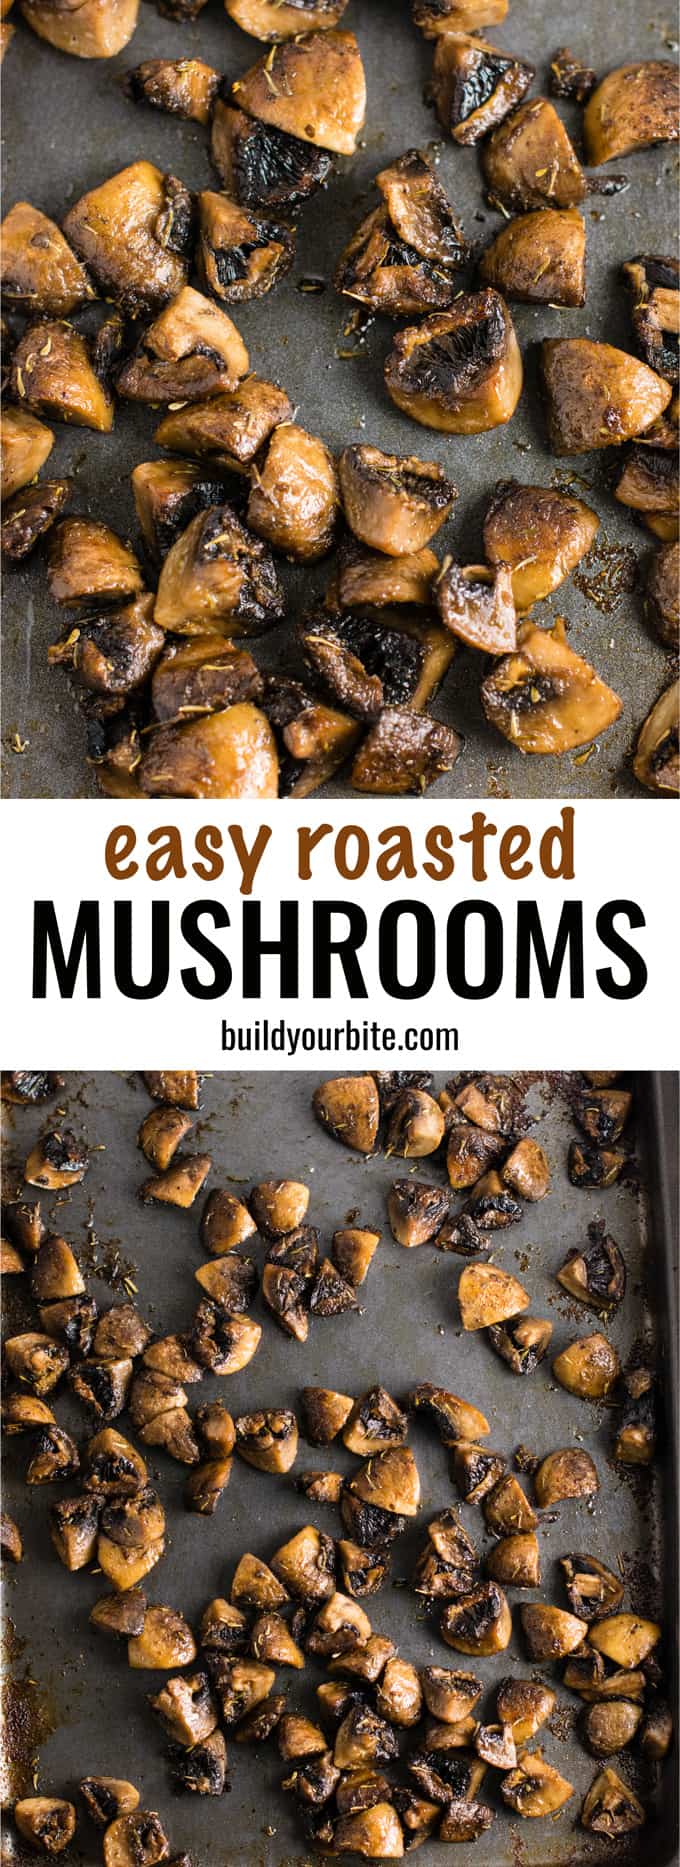 Quick and easy roasted mushrooms recipe. Perfect healthy side dish! #sidedish #roastedmushrooms #vegan #meatless #mushrooms #dinner #vegetables 